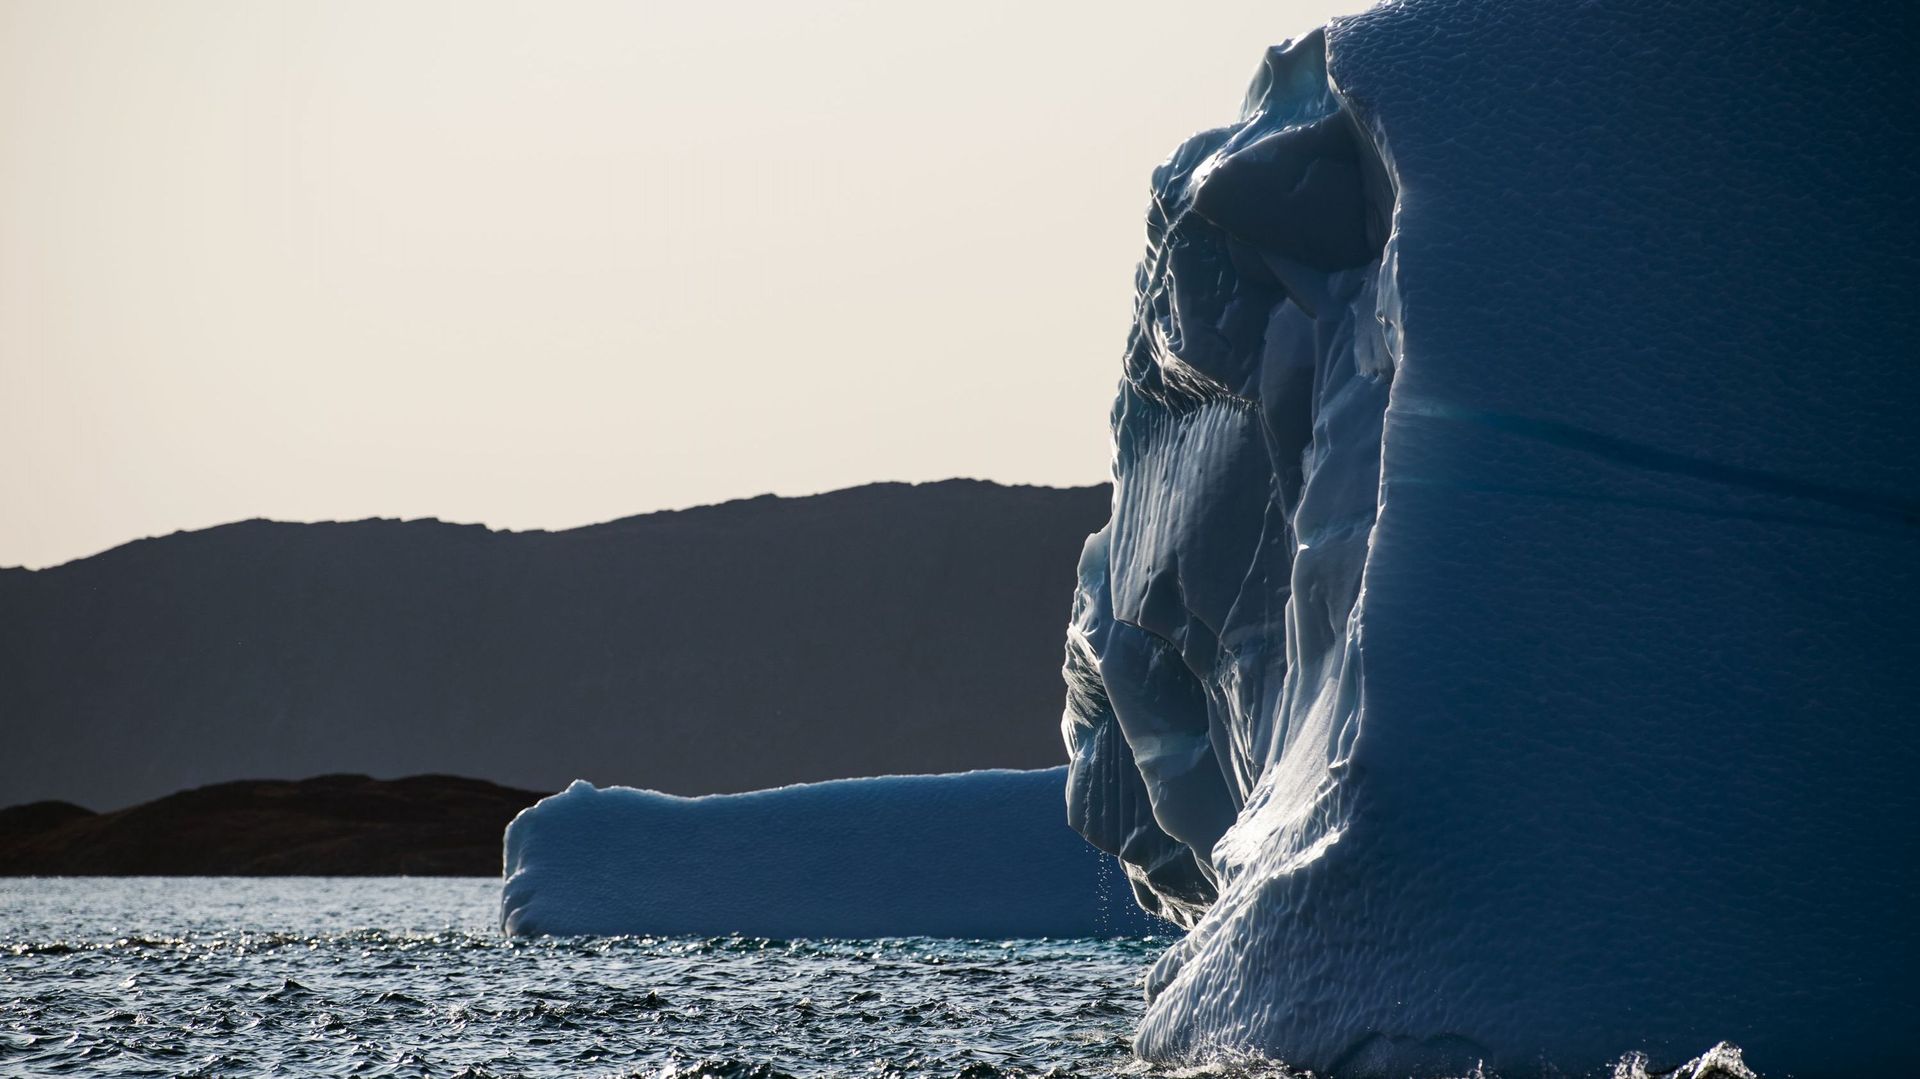 La fonte des glaces des régions arctiques, comme cet iceberg du sud est du Groenland, est inquiétante après cet hiver doux et ce printemps chaud, selon les climatologues.